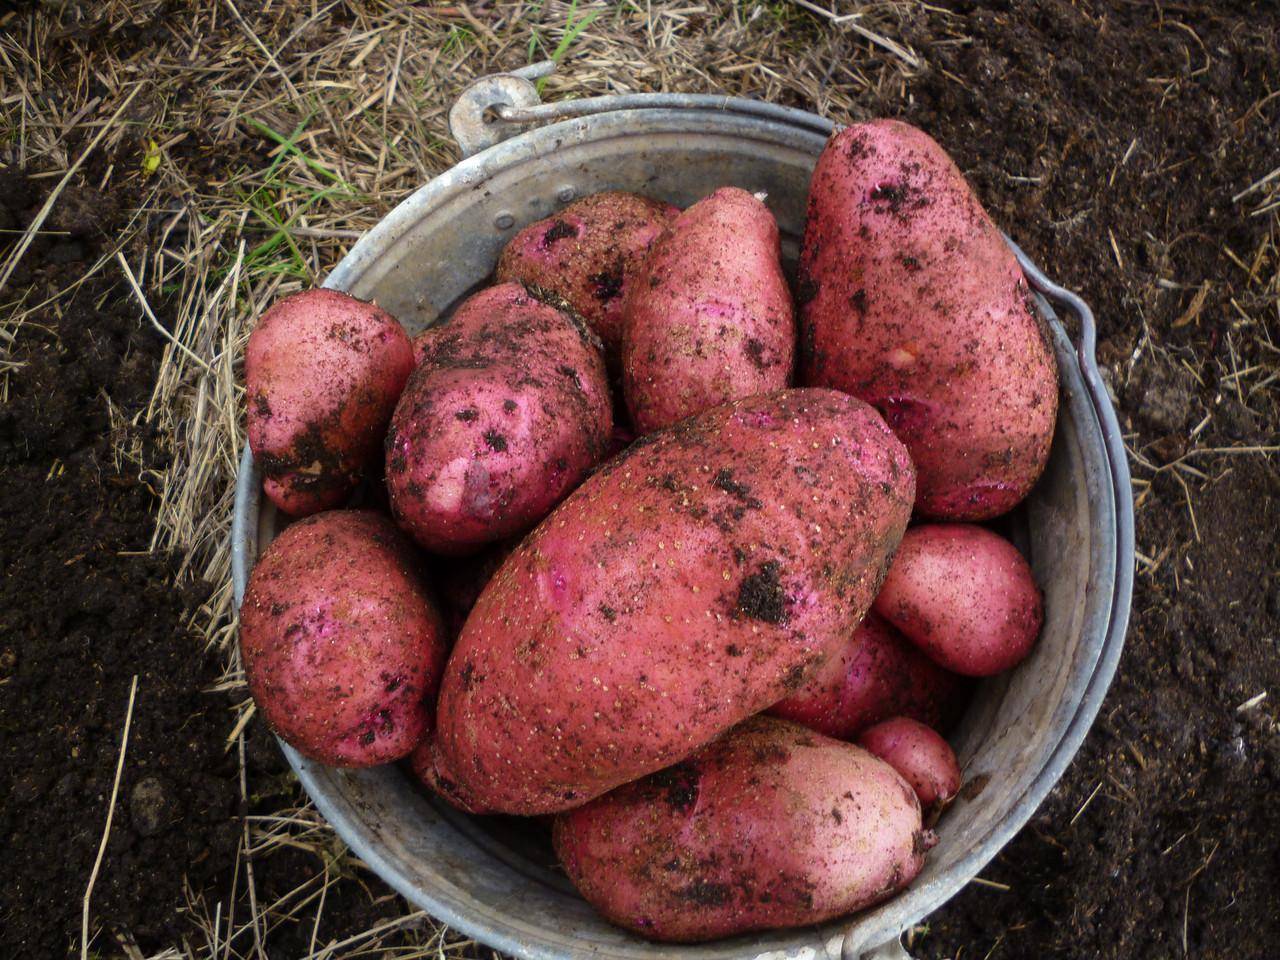 Сорт картофеля родриго: общая характеристика, описание данной разновидности и фото, пошаговая инструкция по выращиванию, болезни и вредители, хранение урожая